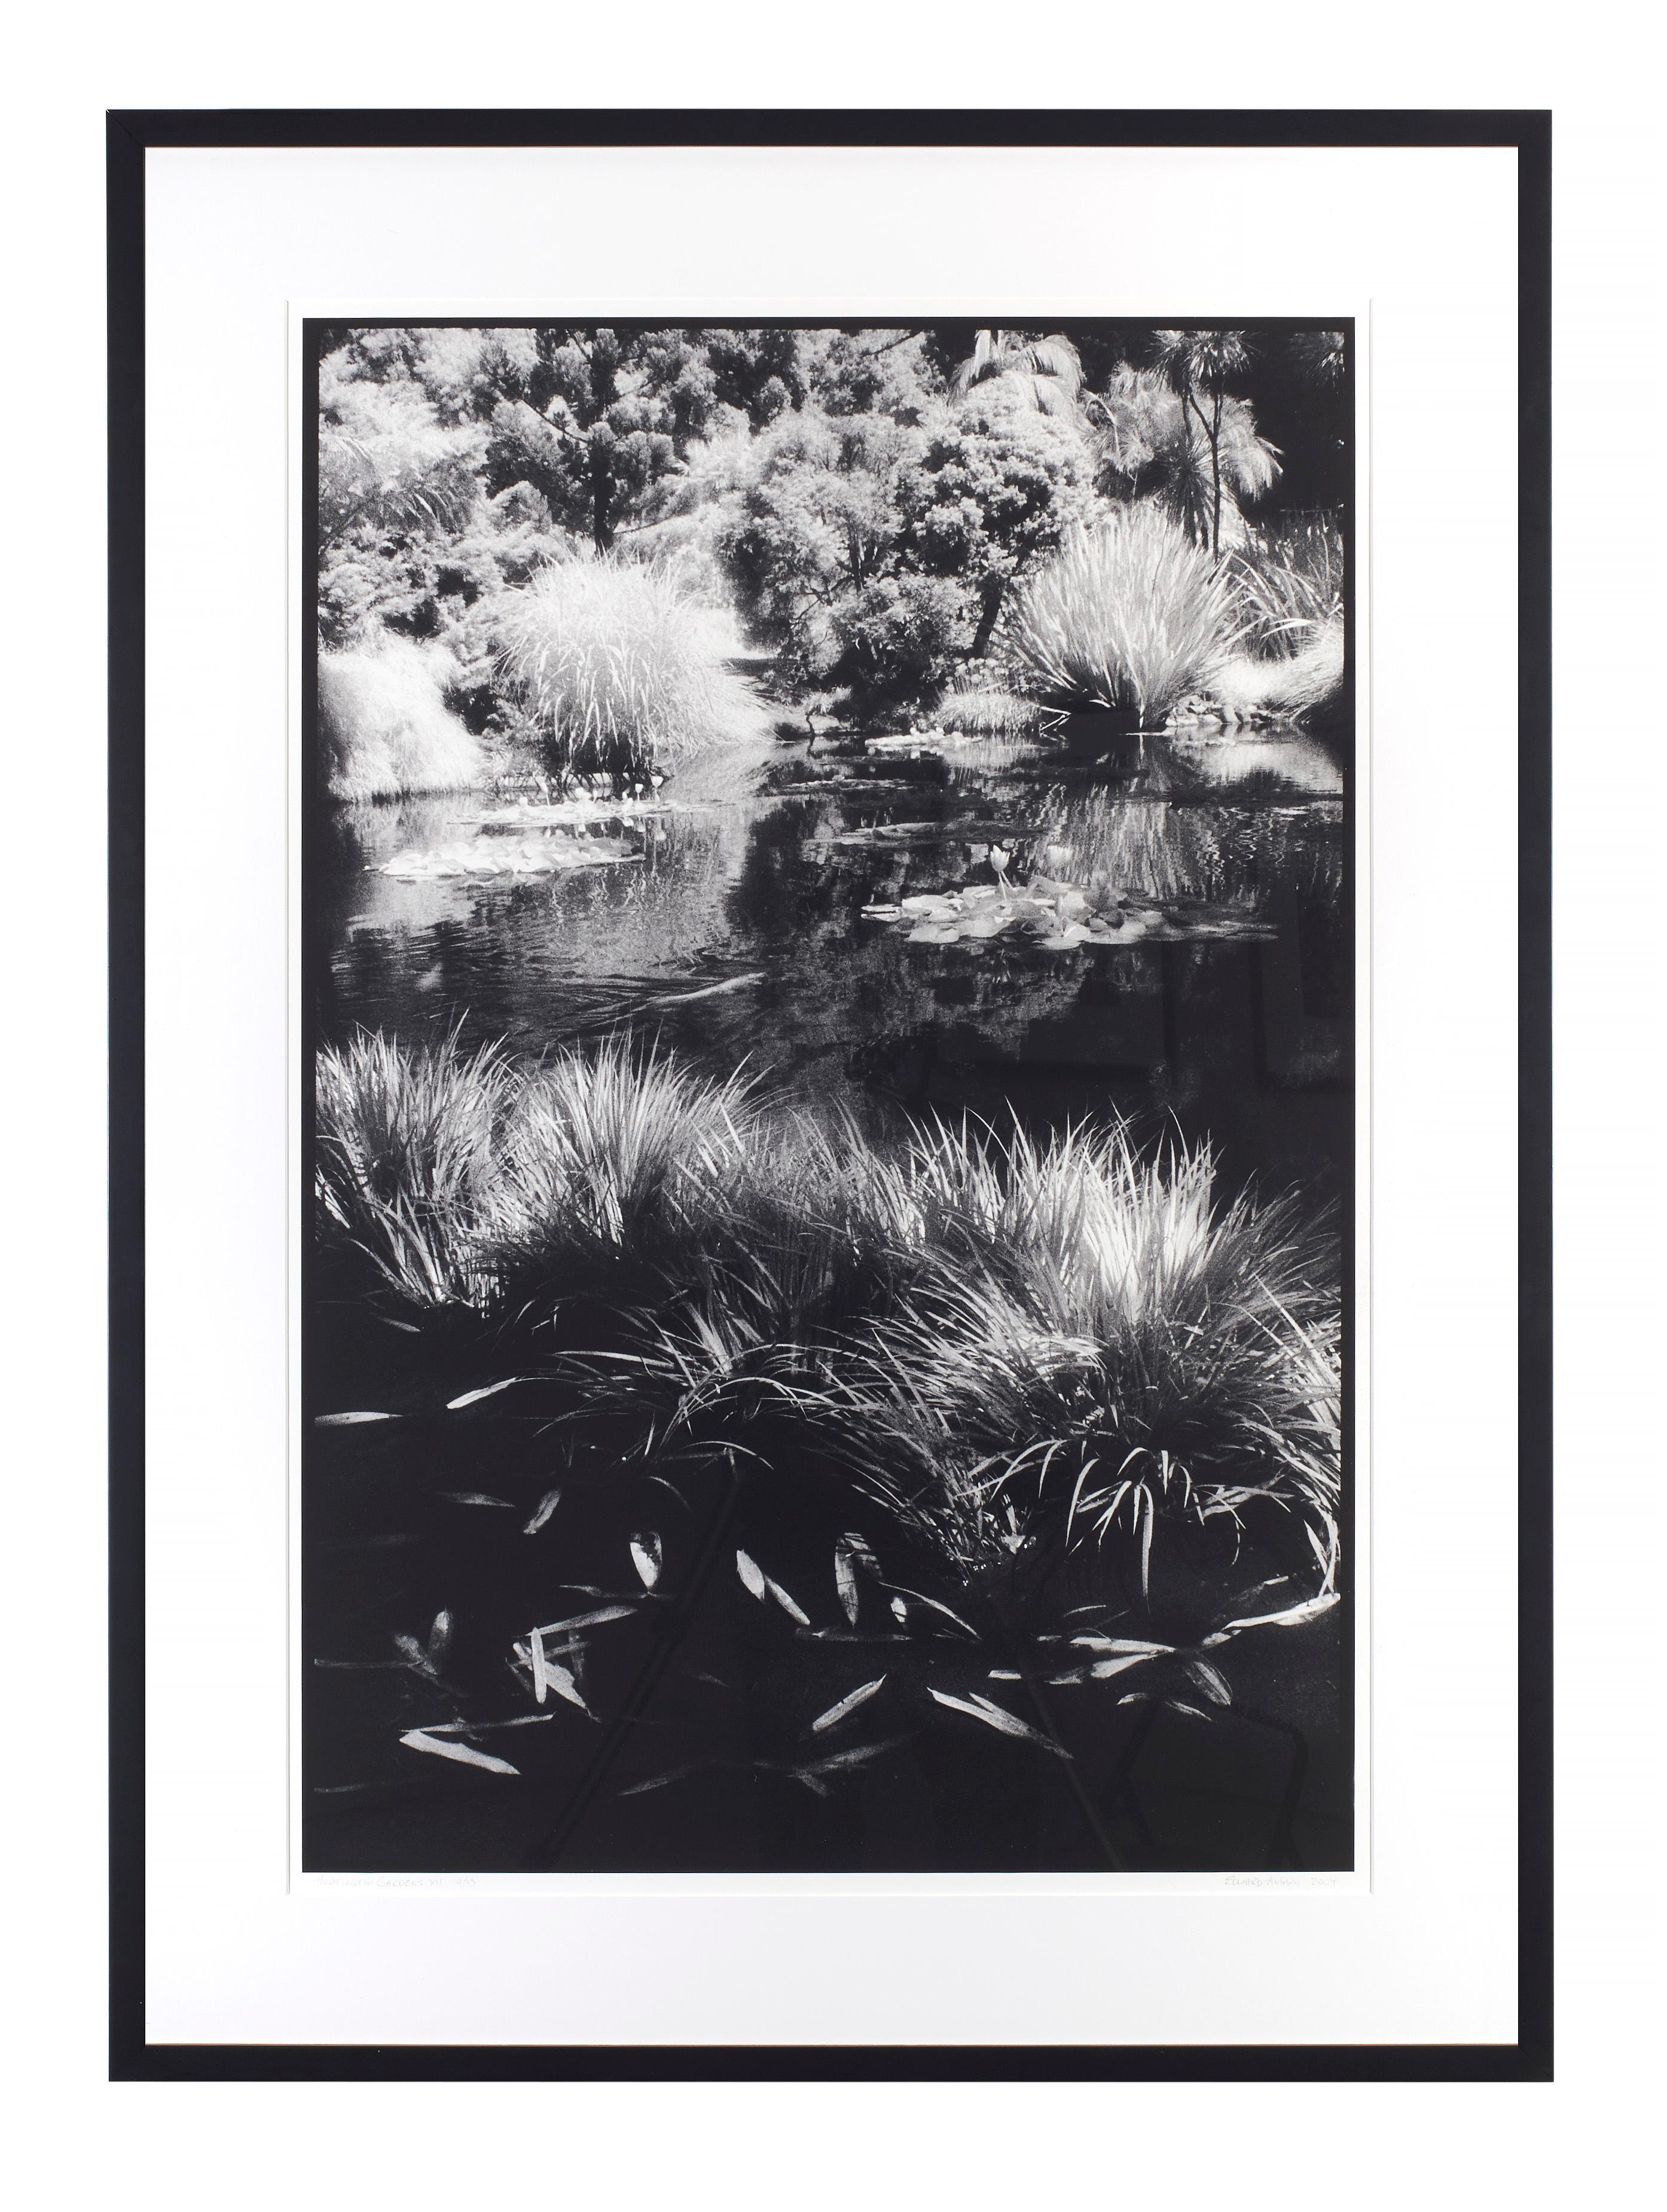 Black and White Photograph Edward Alfano - Huntington Gardens XII - Photographie de paysage contemporain d'un étang et de plantes 